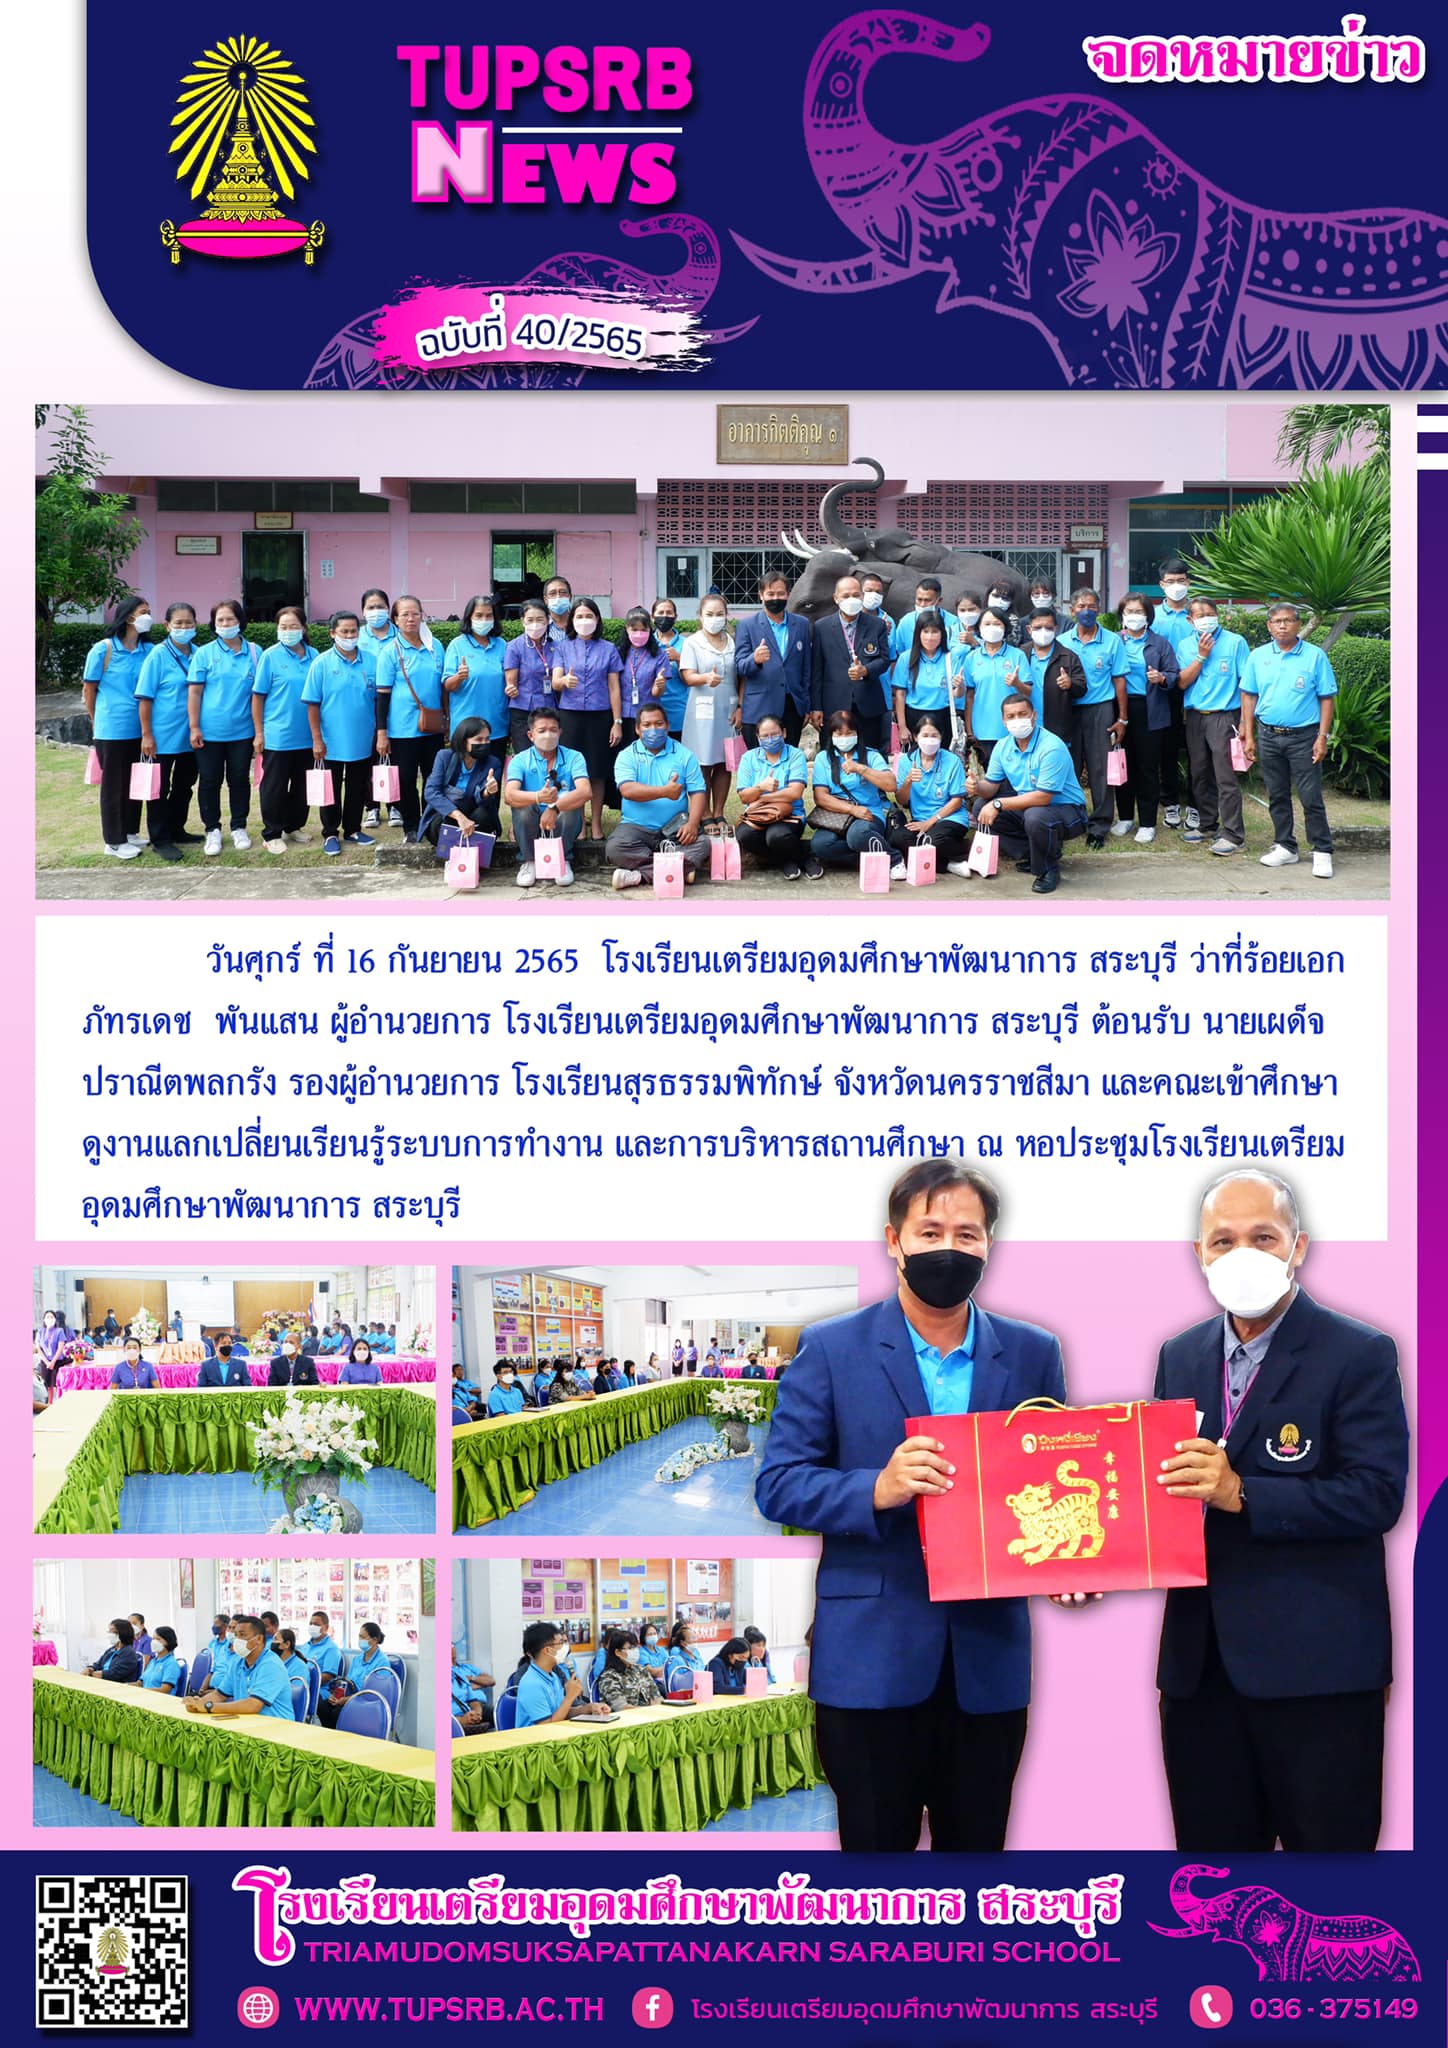 วันศุกร์ ที่ 16 กันยายน 2565 โรงเรียนเตรียมอุดมศึกษาพัฒนาการ สระบุรี ว่าที่ร้อยเอกภัทรเดช พันแสน ผู้อำนวยการ โรงเรียนเตรียมอุดมศึกษาพัฒนาการ สระบุรี ต้อนรับ นายเผด็จ ปราณีตพลกรัง รองผู้อำนวยการ โรงเรียนสุรธรรมพิทักษ์ จังหวัดนครราชสีมา และคณะเข้าศึกษาดูงานแลกเปลี่ยนเรียนรู้ระบบการทำงาน และการบริหารสถานศึกษา ณ หอประชุมโรงเรียนเตรียมอุดมศึกษาพัฒนาการ สระบุรี ภาพ : ปัญญา กุลภา ข่าว : ศรัลย์ภัสร์ จันทร์คำ ฝ่ายประชาสัมพันธ์ TUPSRB